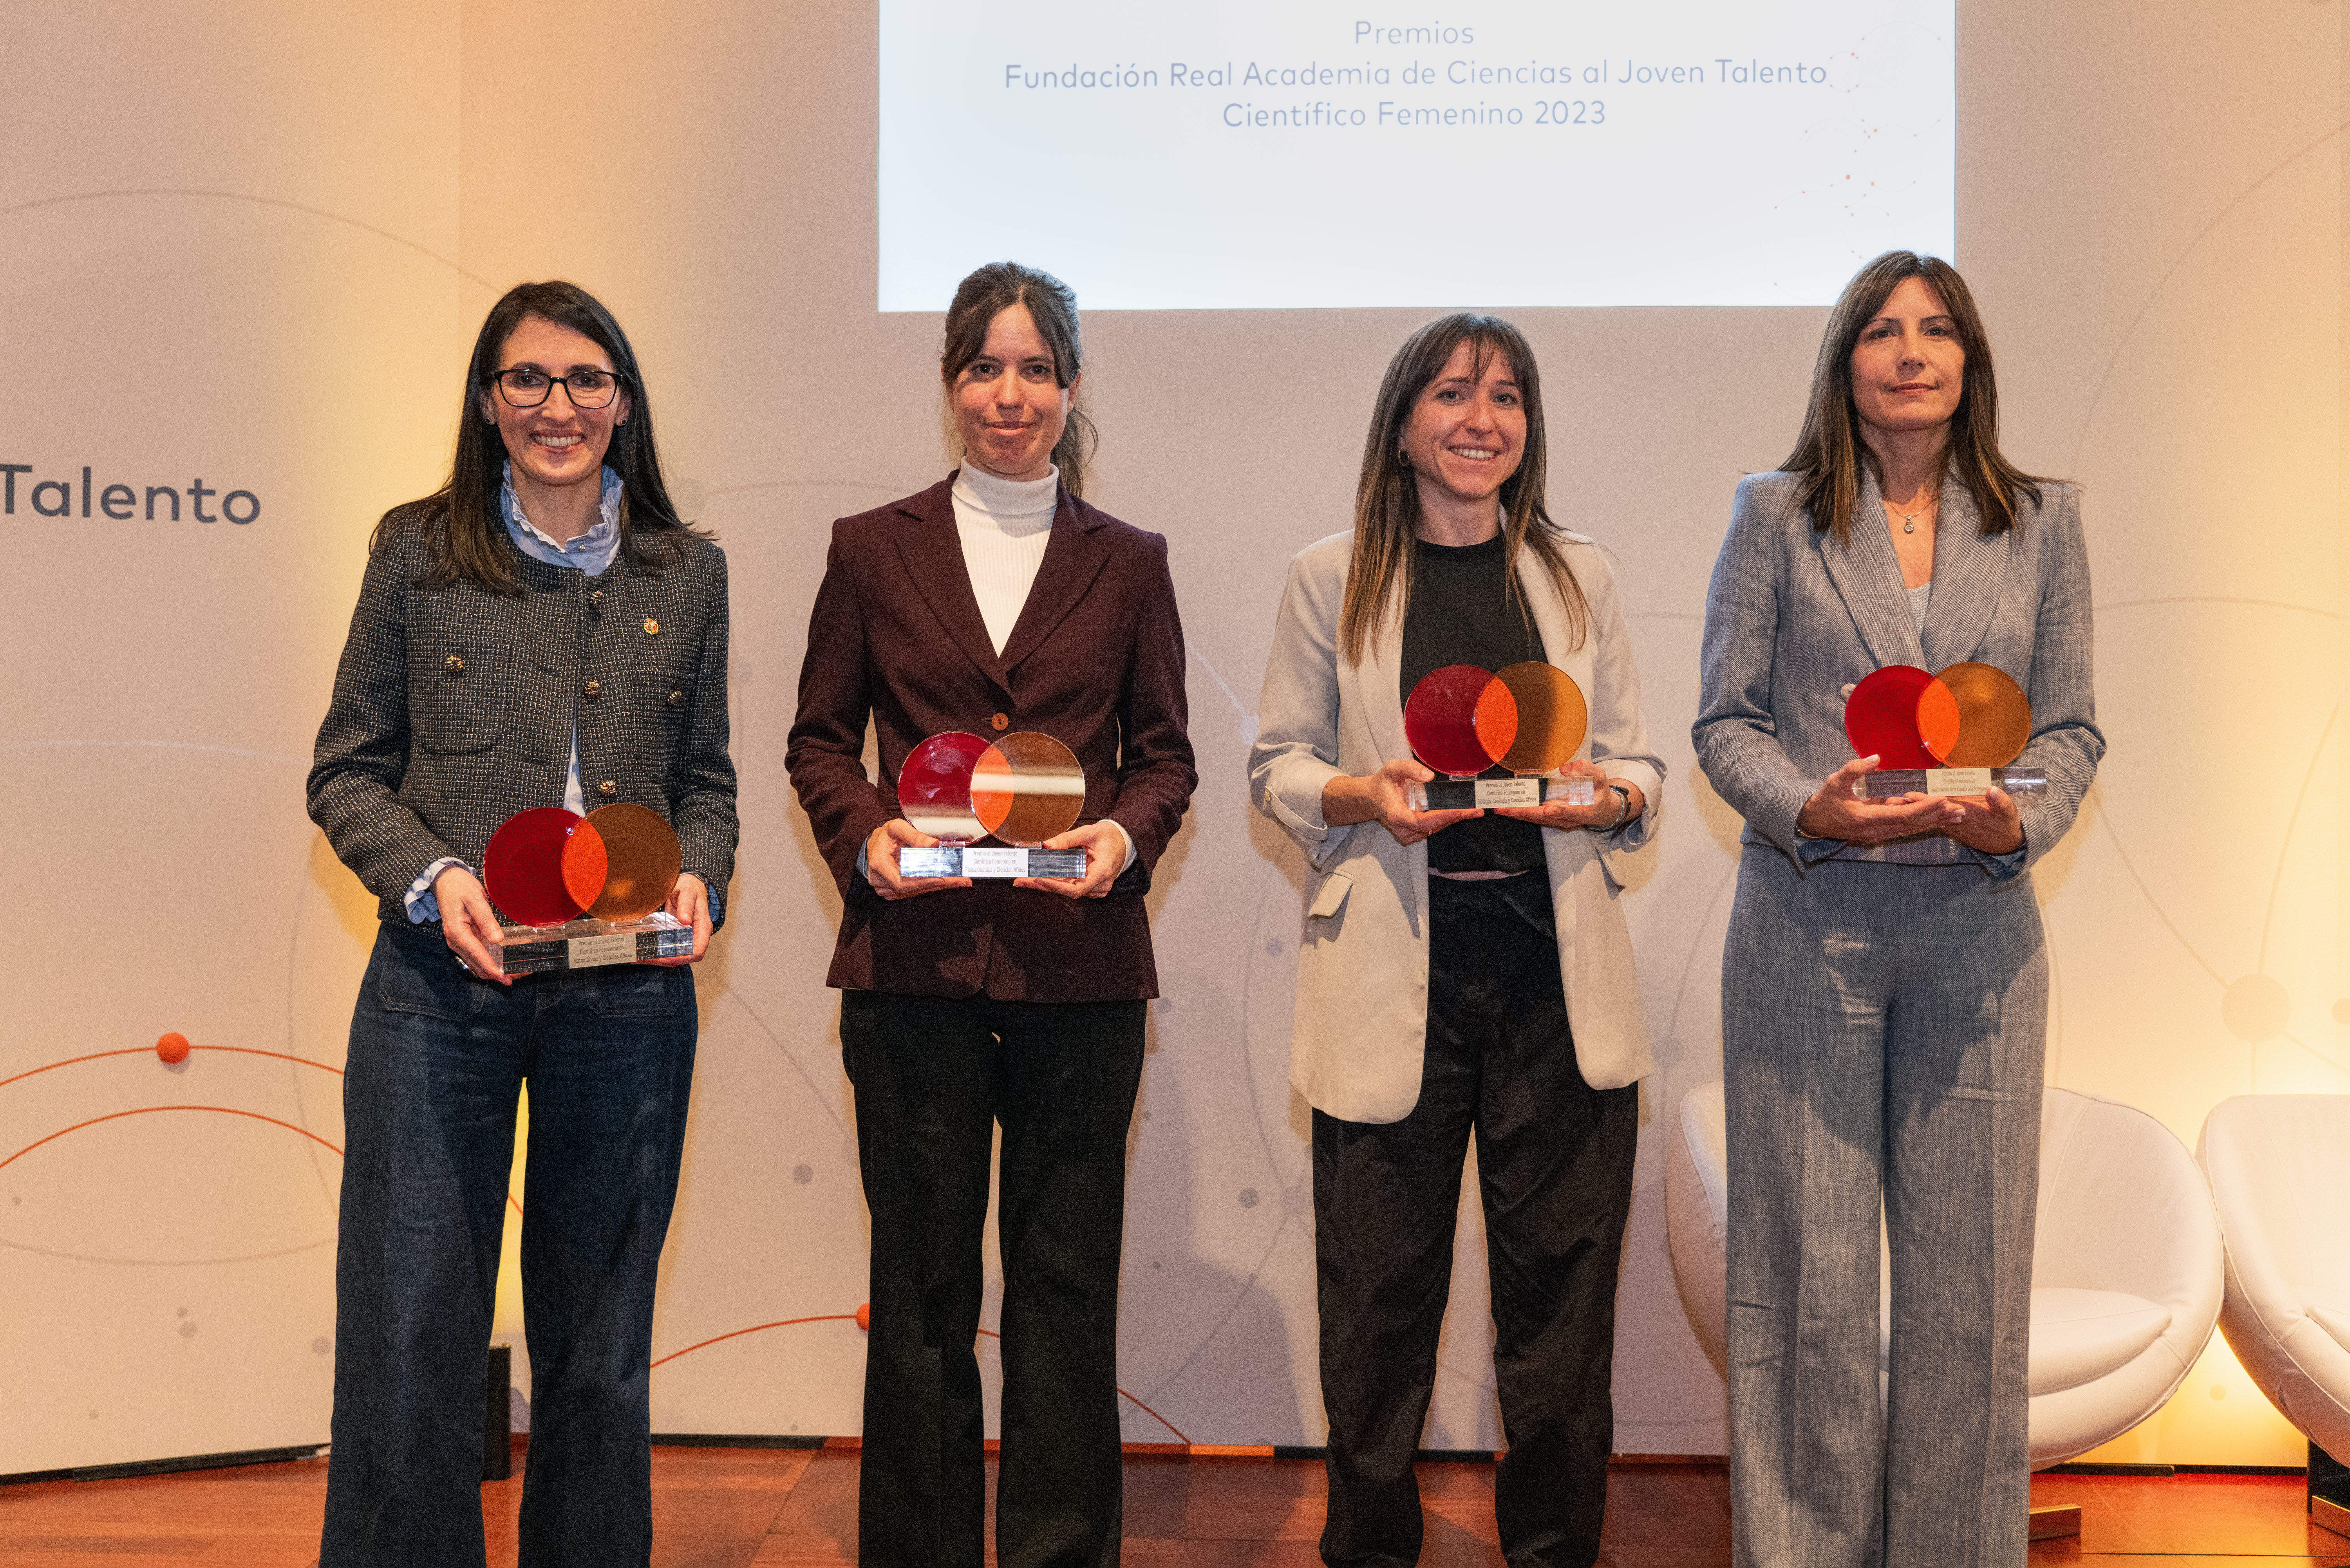 De izquierda a derecha: Rosa María Crujeiras Casais, ganadora en “Matemáticas”; Irene Valenzuela Agüí, ganadora en “Física y Química”; Blanca Ausín González, ganadora en “Biología y Geología” e Isabel Oller Alberola ganadora de “Ciencias Aplicadas a la Tecnología”.